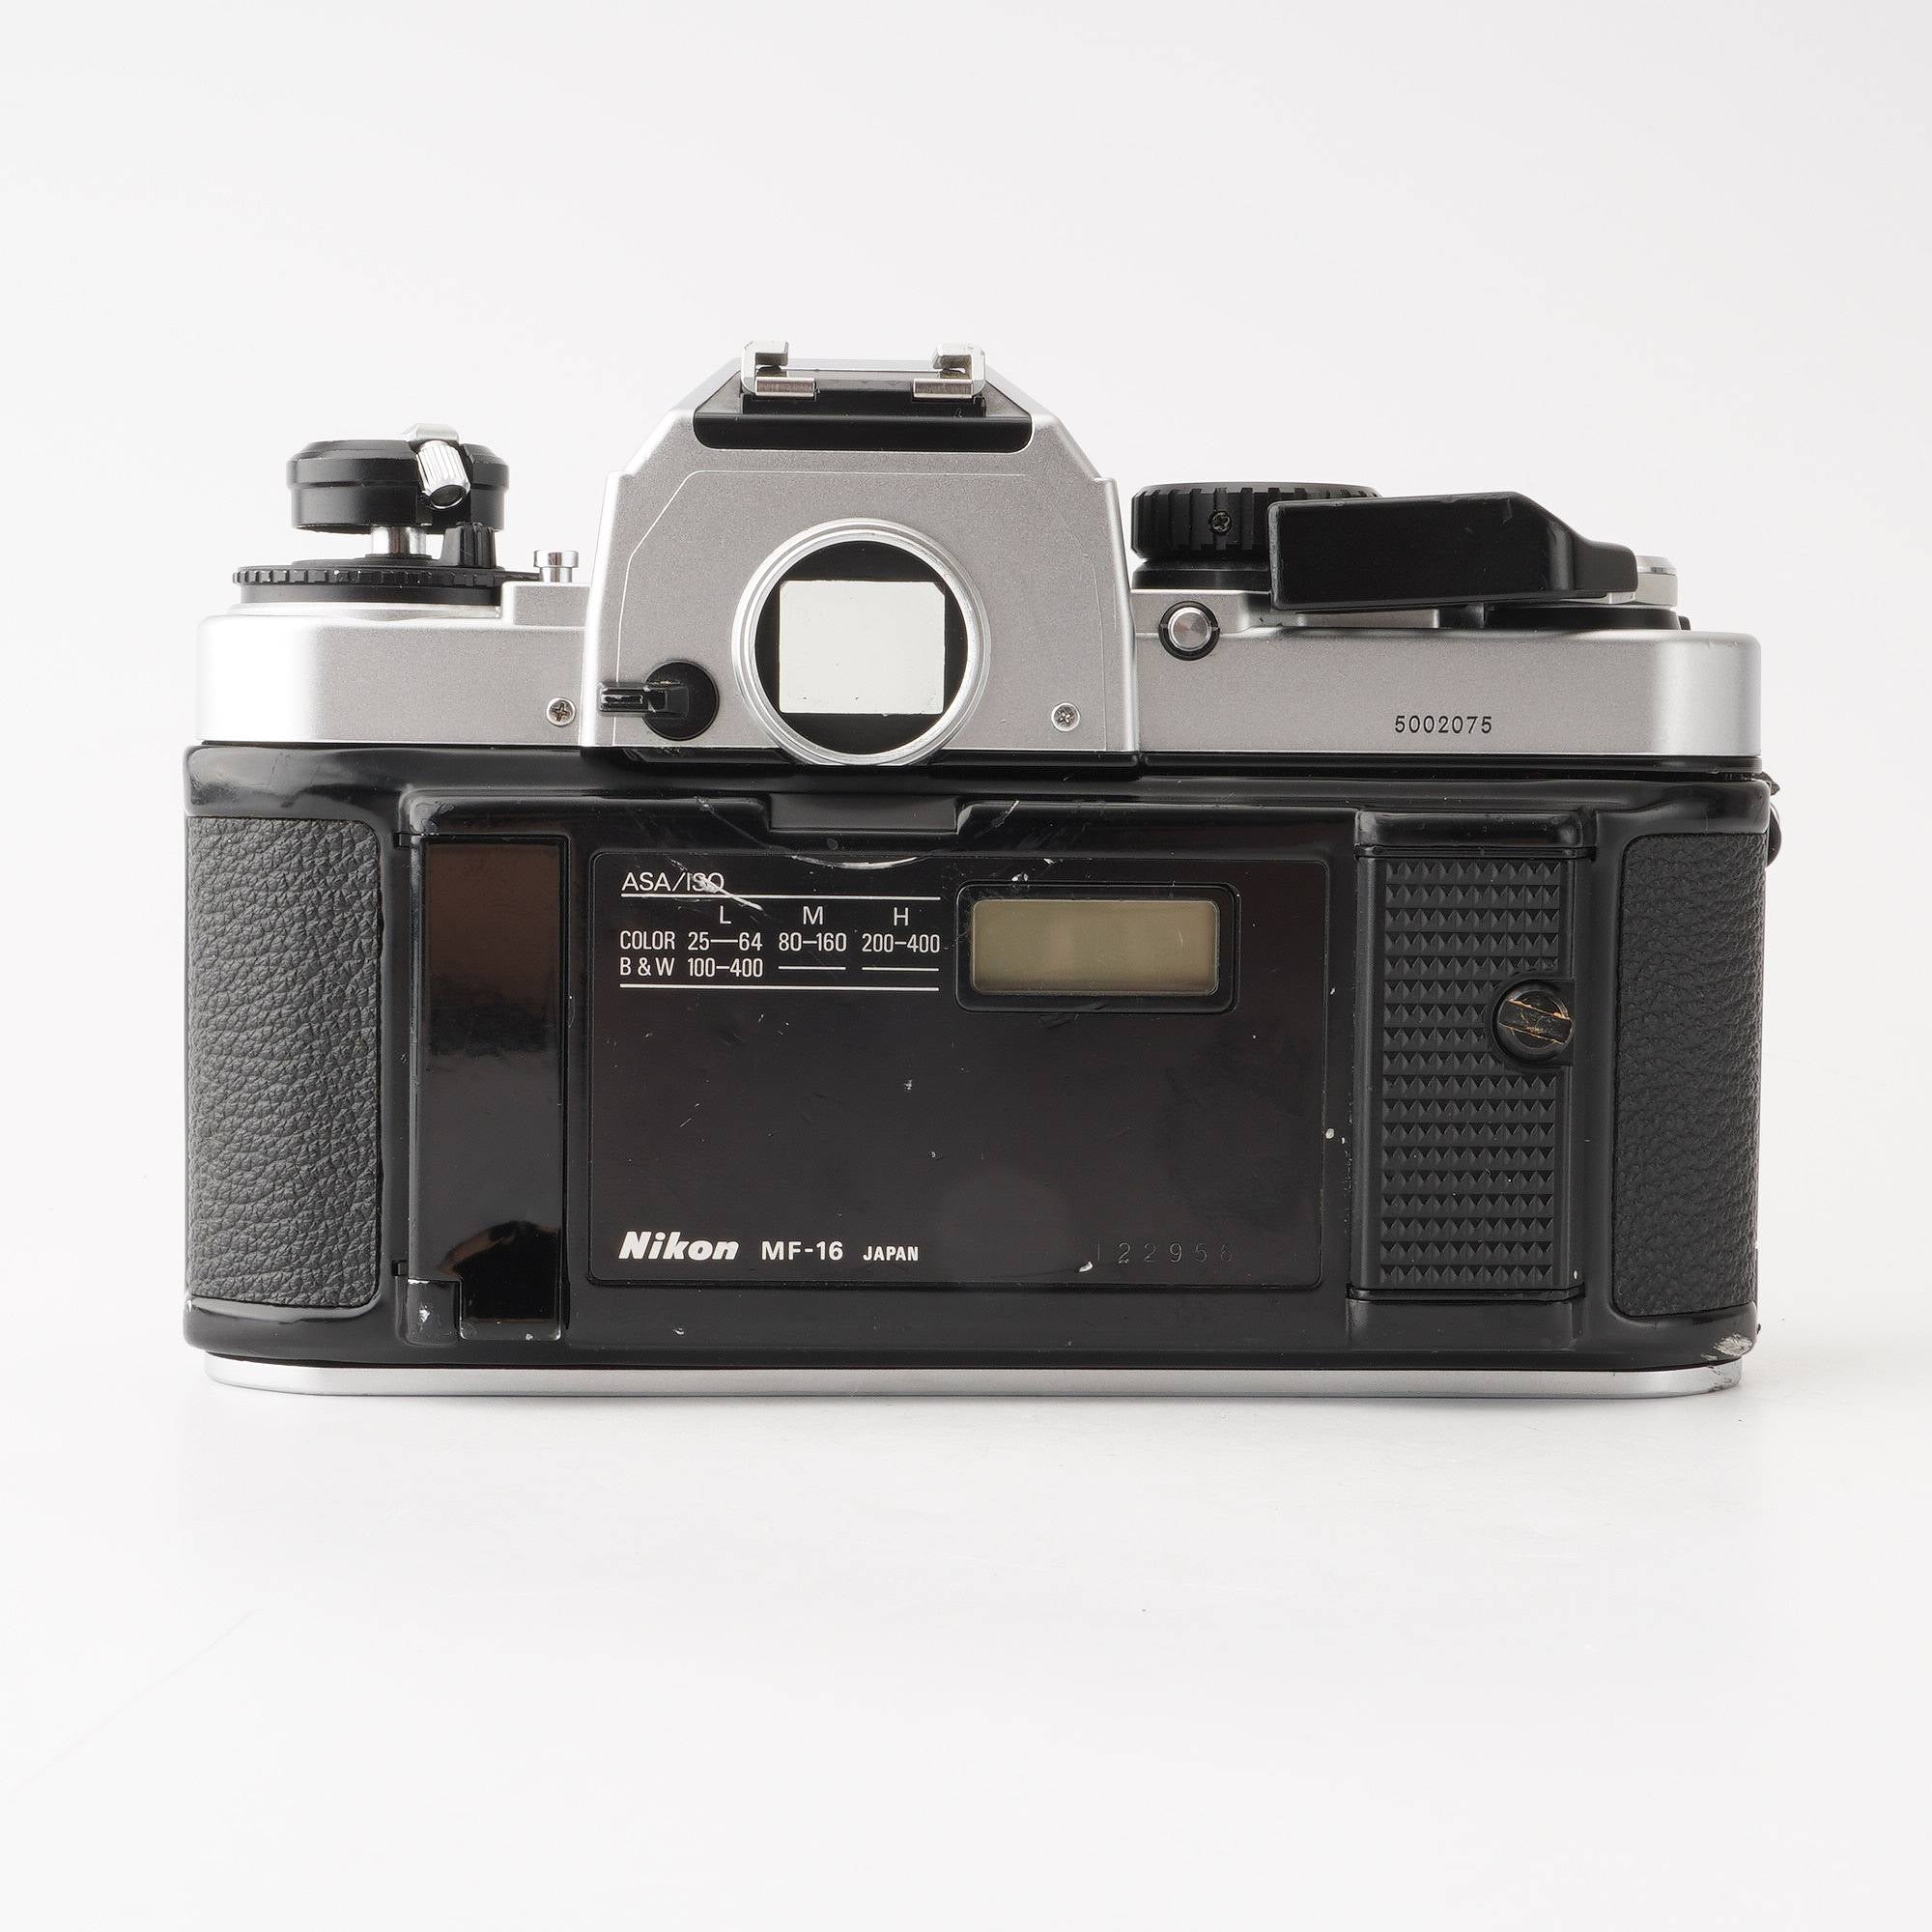 ニコン Nikon FA 一眼レフフィルムカメラ – Natural Camera 